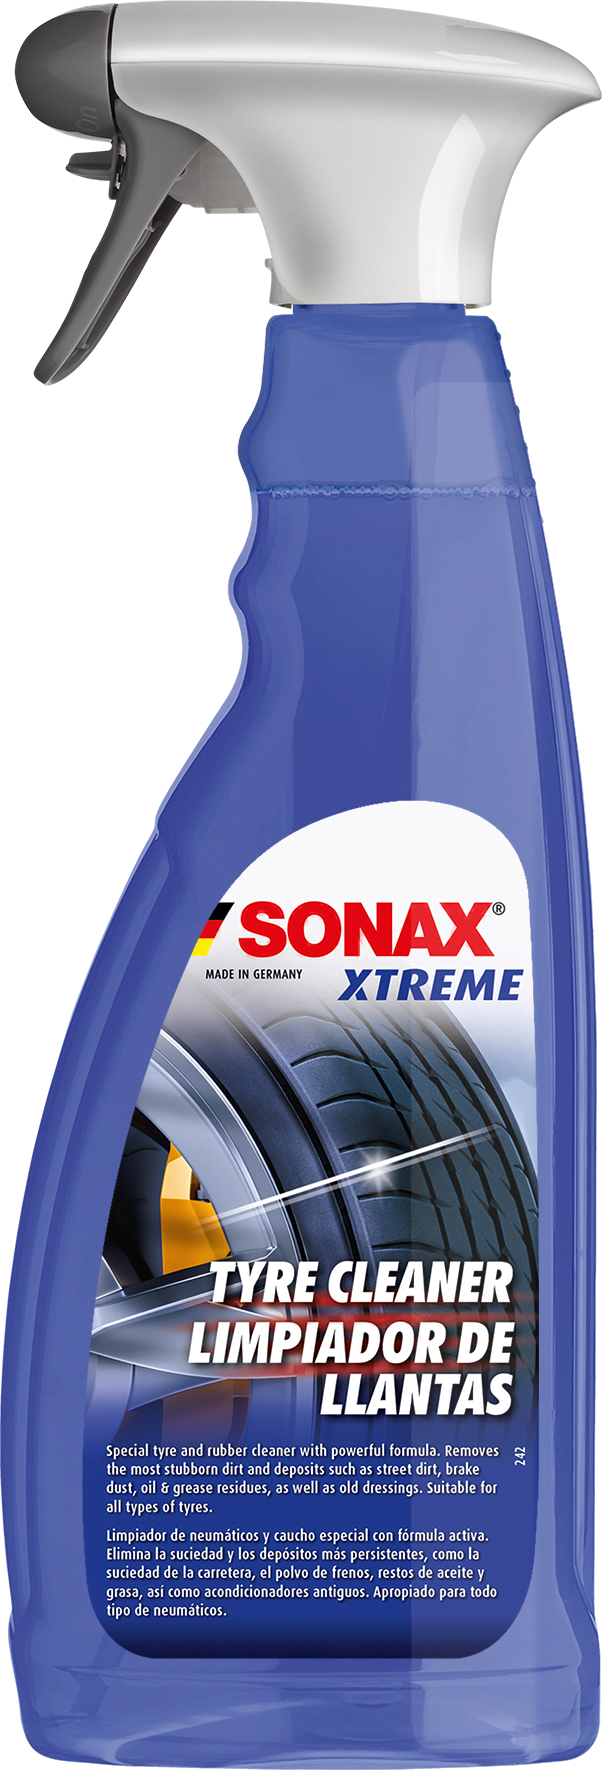 SONAX Xtreme padangu gumu valiklis